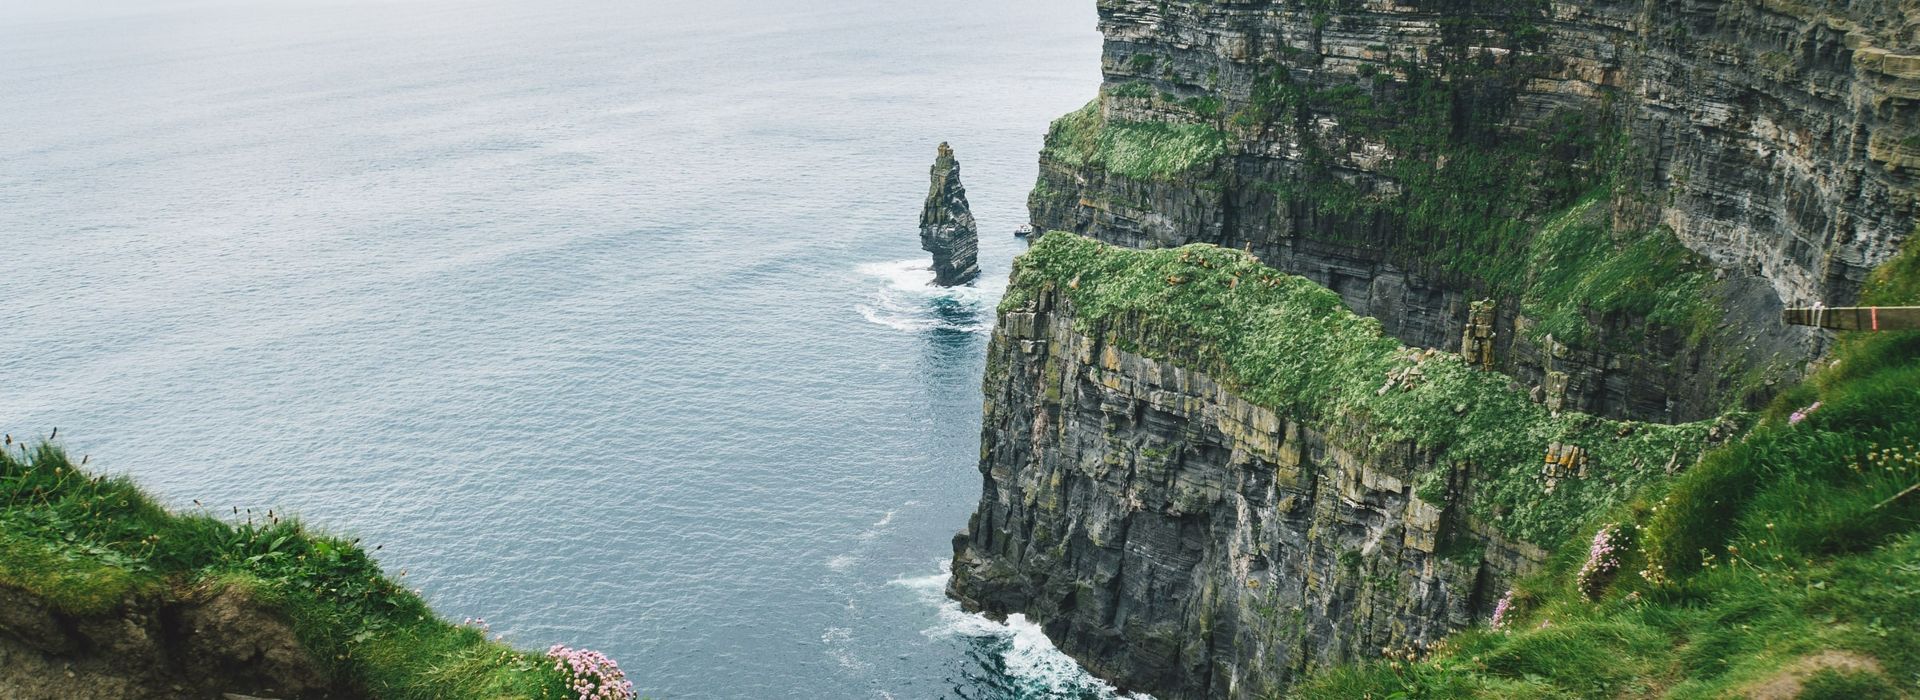 Ireland-Cliffs of Moher-kelly-kiernan-LWPJvsS3Lxk-unsplash.jpg